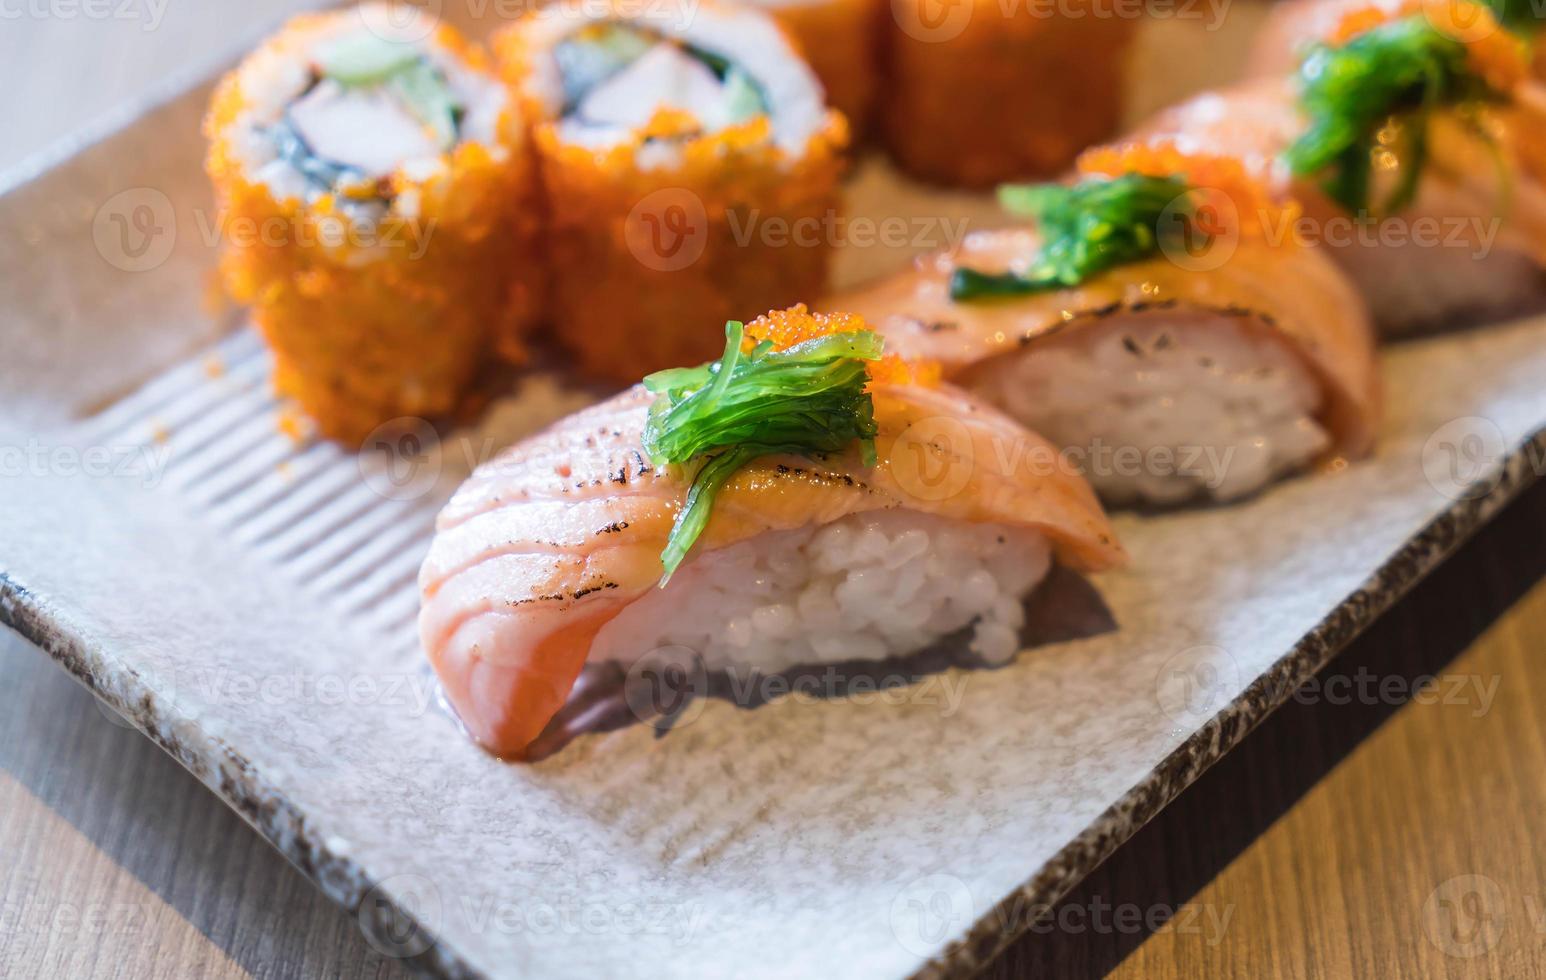 sushi de salmón y maki de salmón - comida japonesa foto